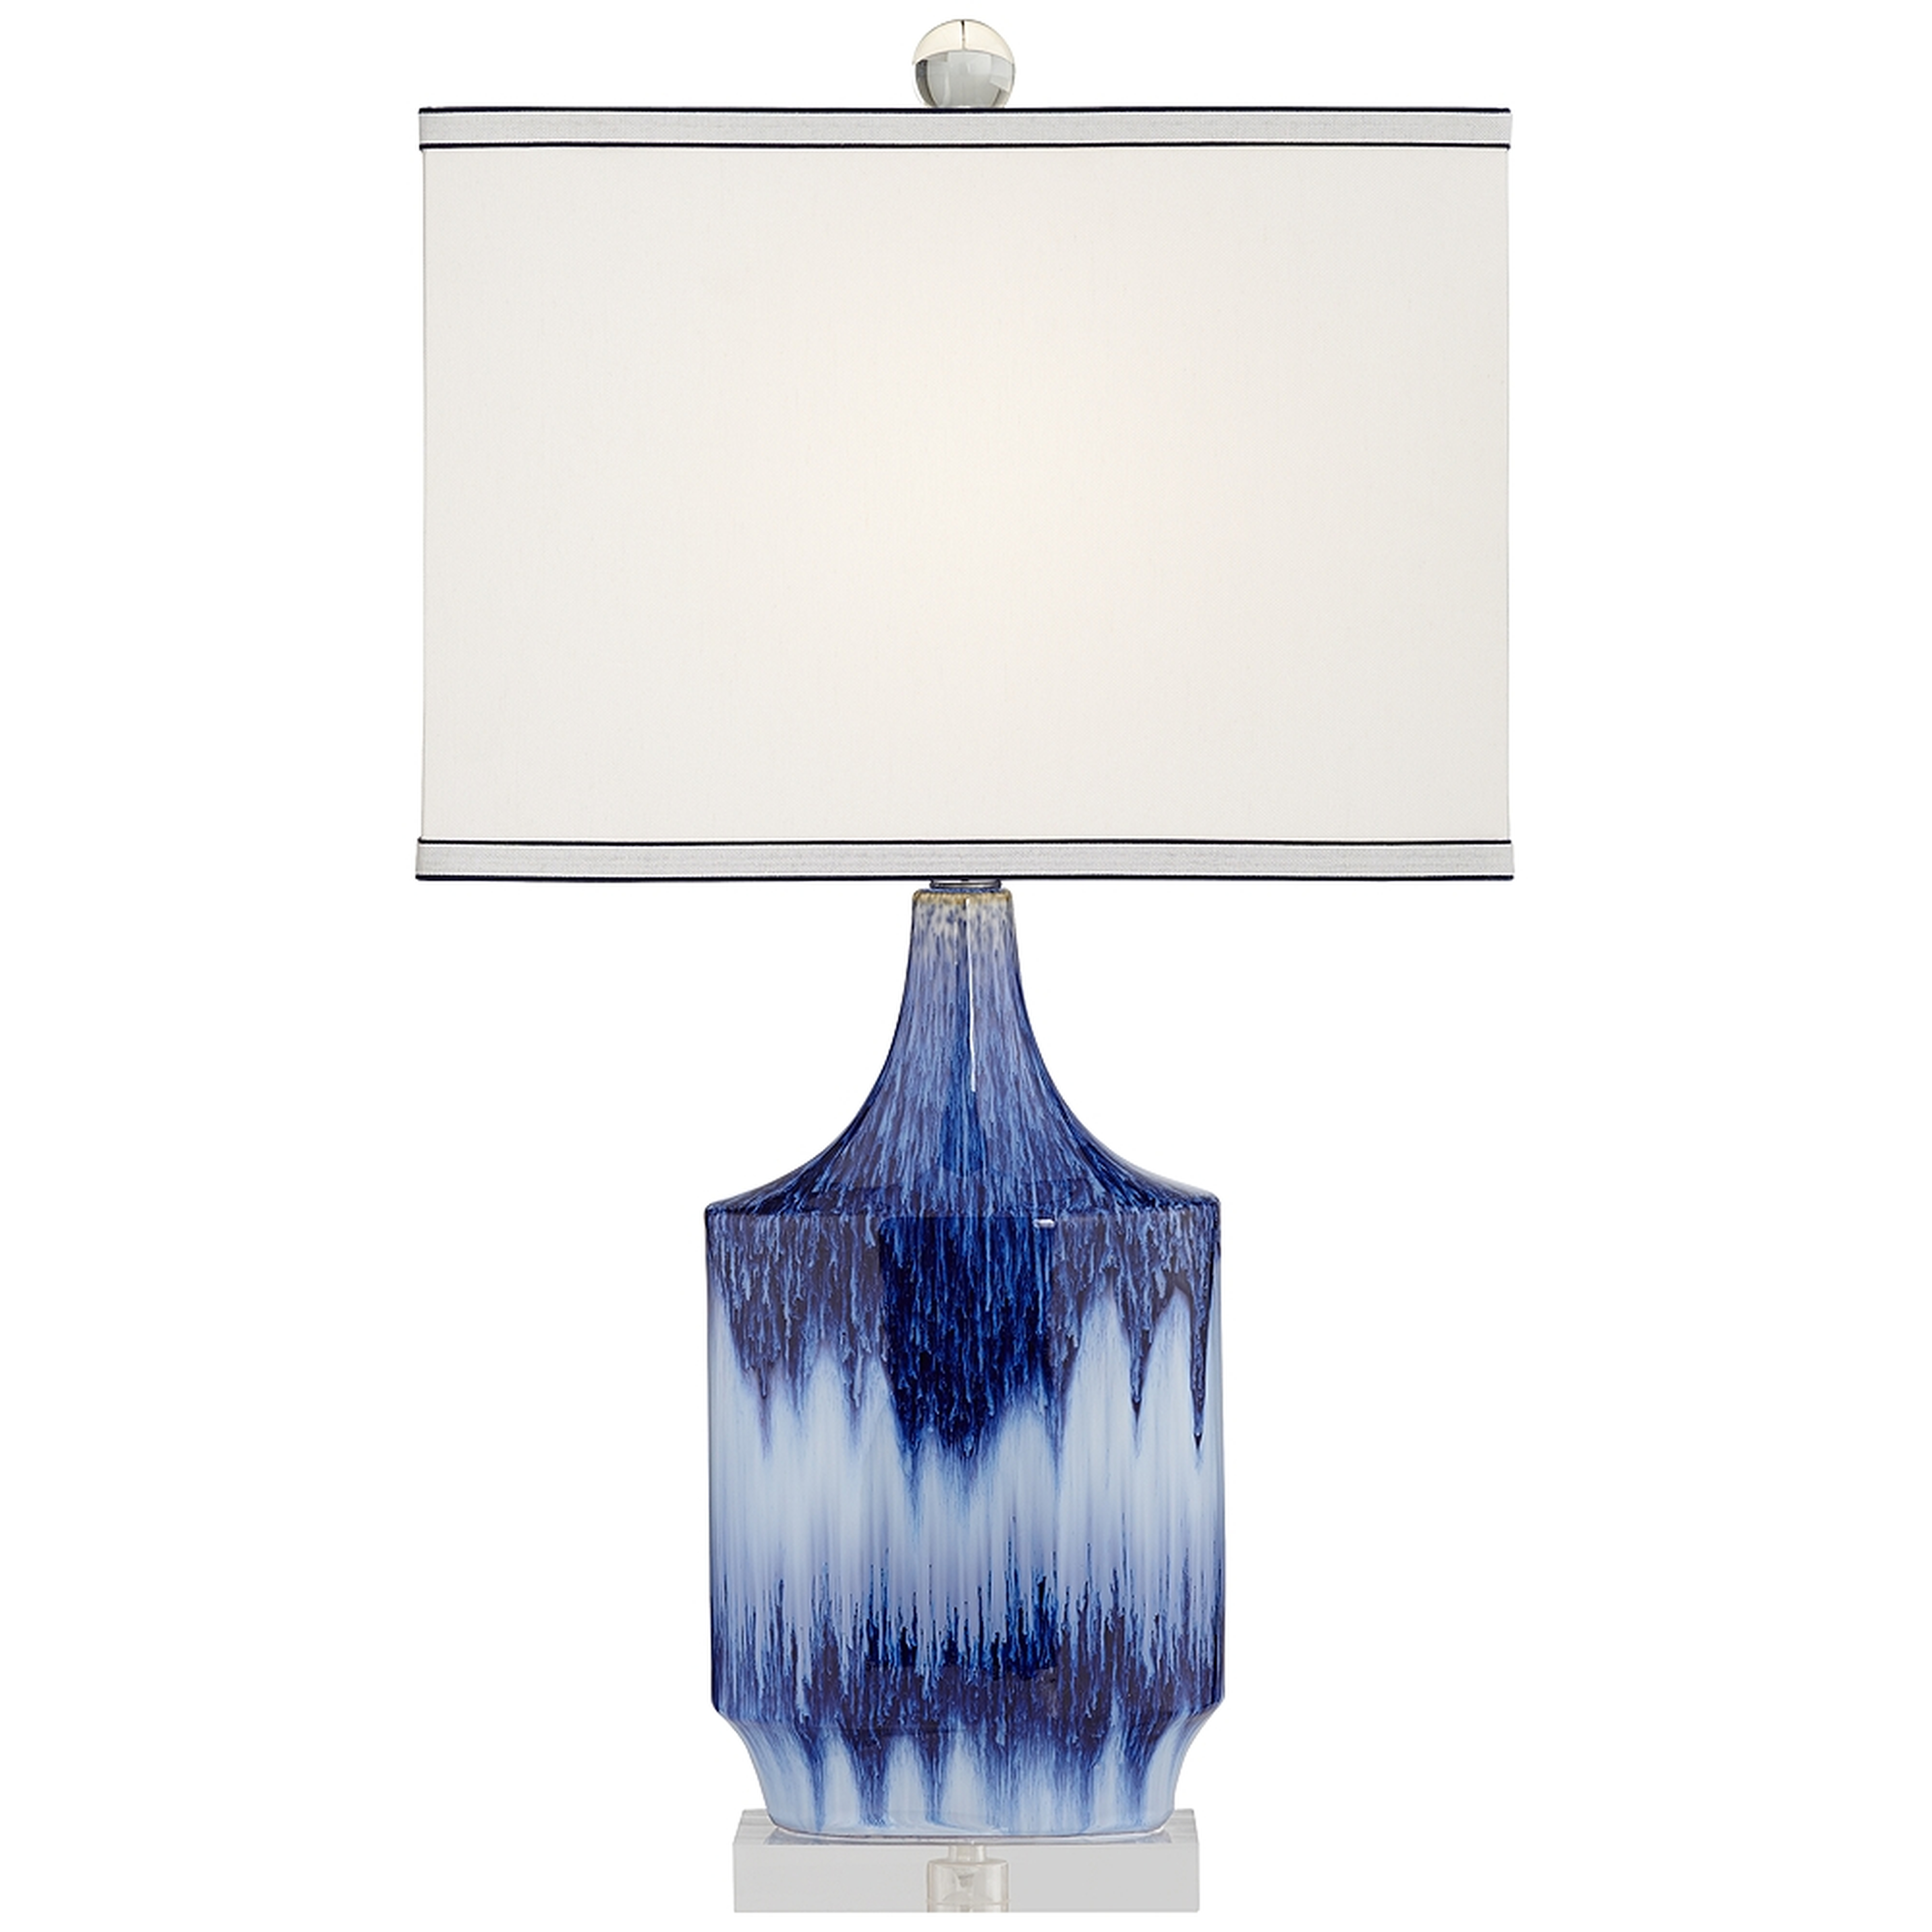 Dusky Blue Ceramic Table Lamp - Style # 40M66 - Lamps Plus